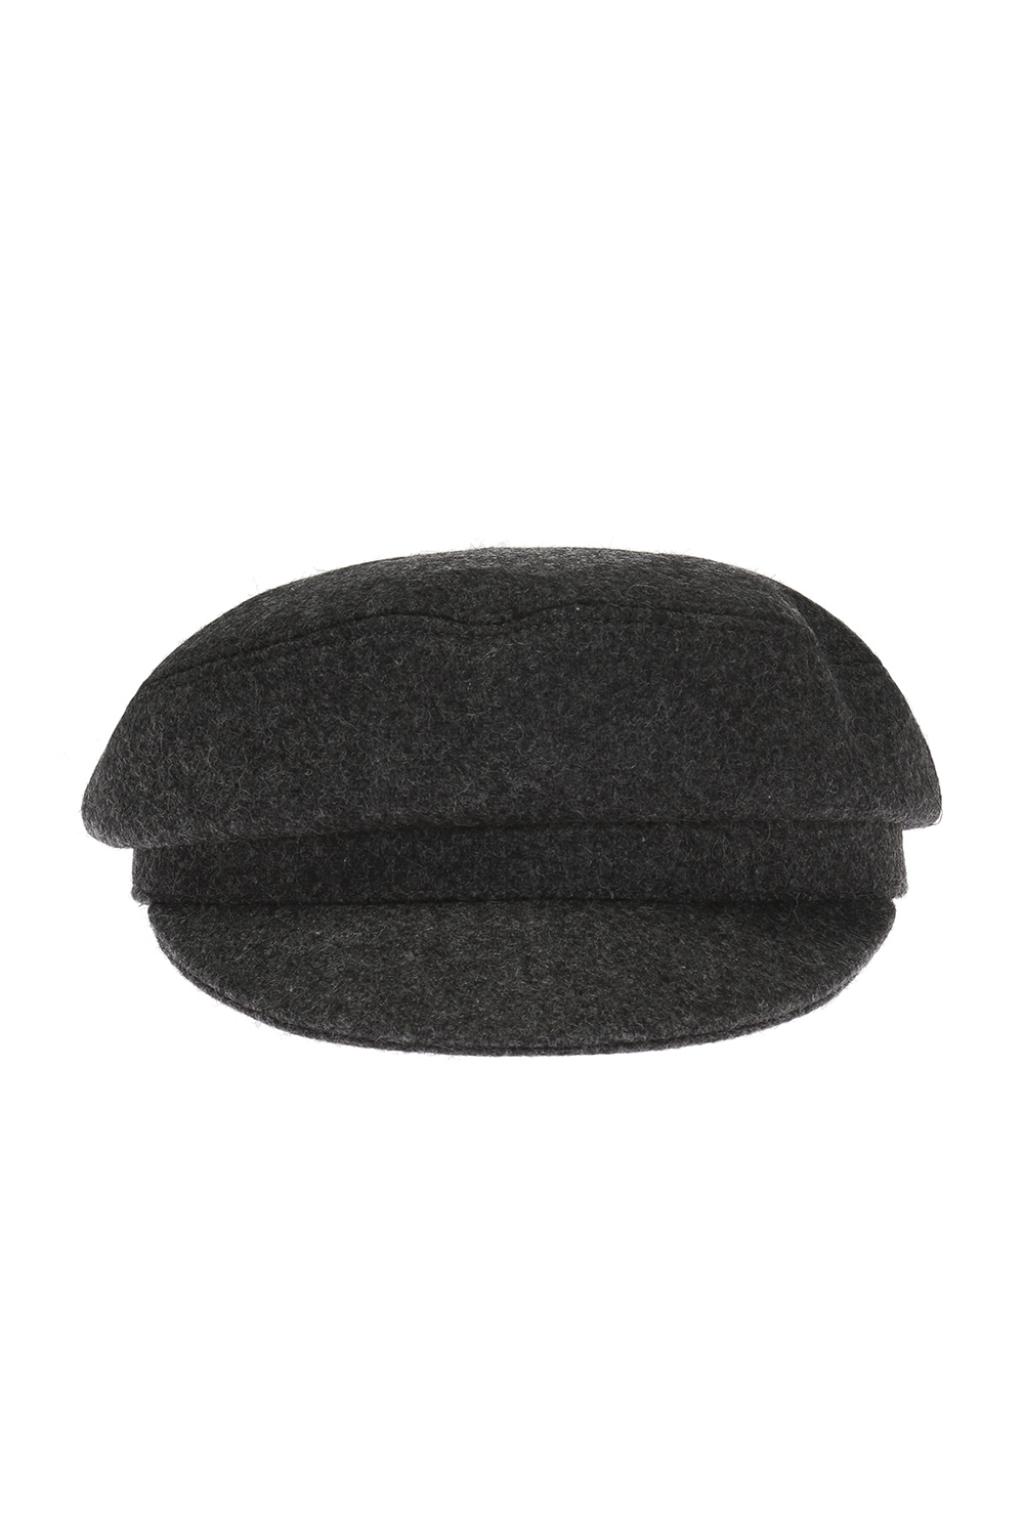 Isabel Marant Wool flat cap